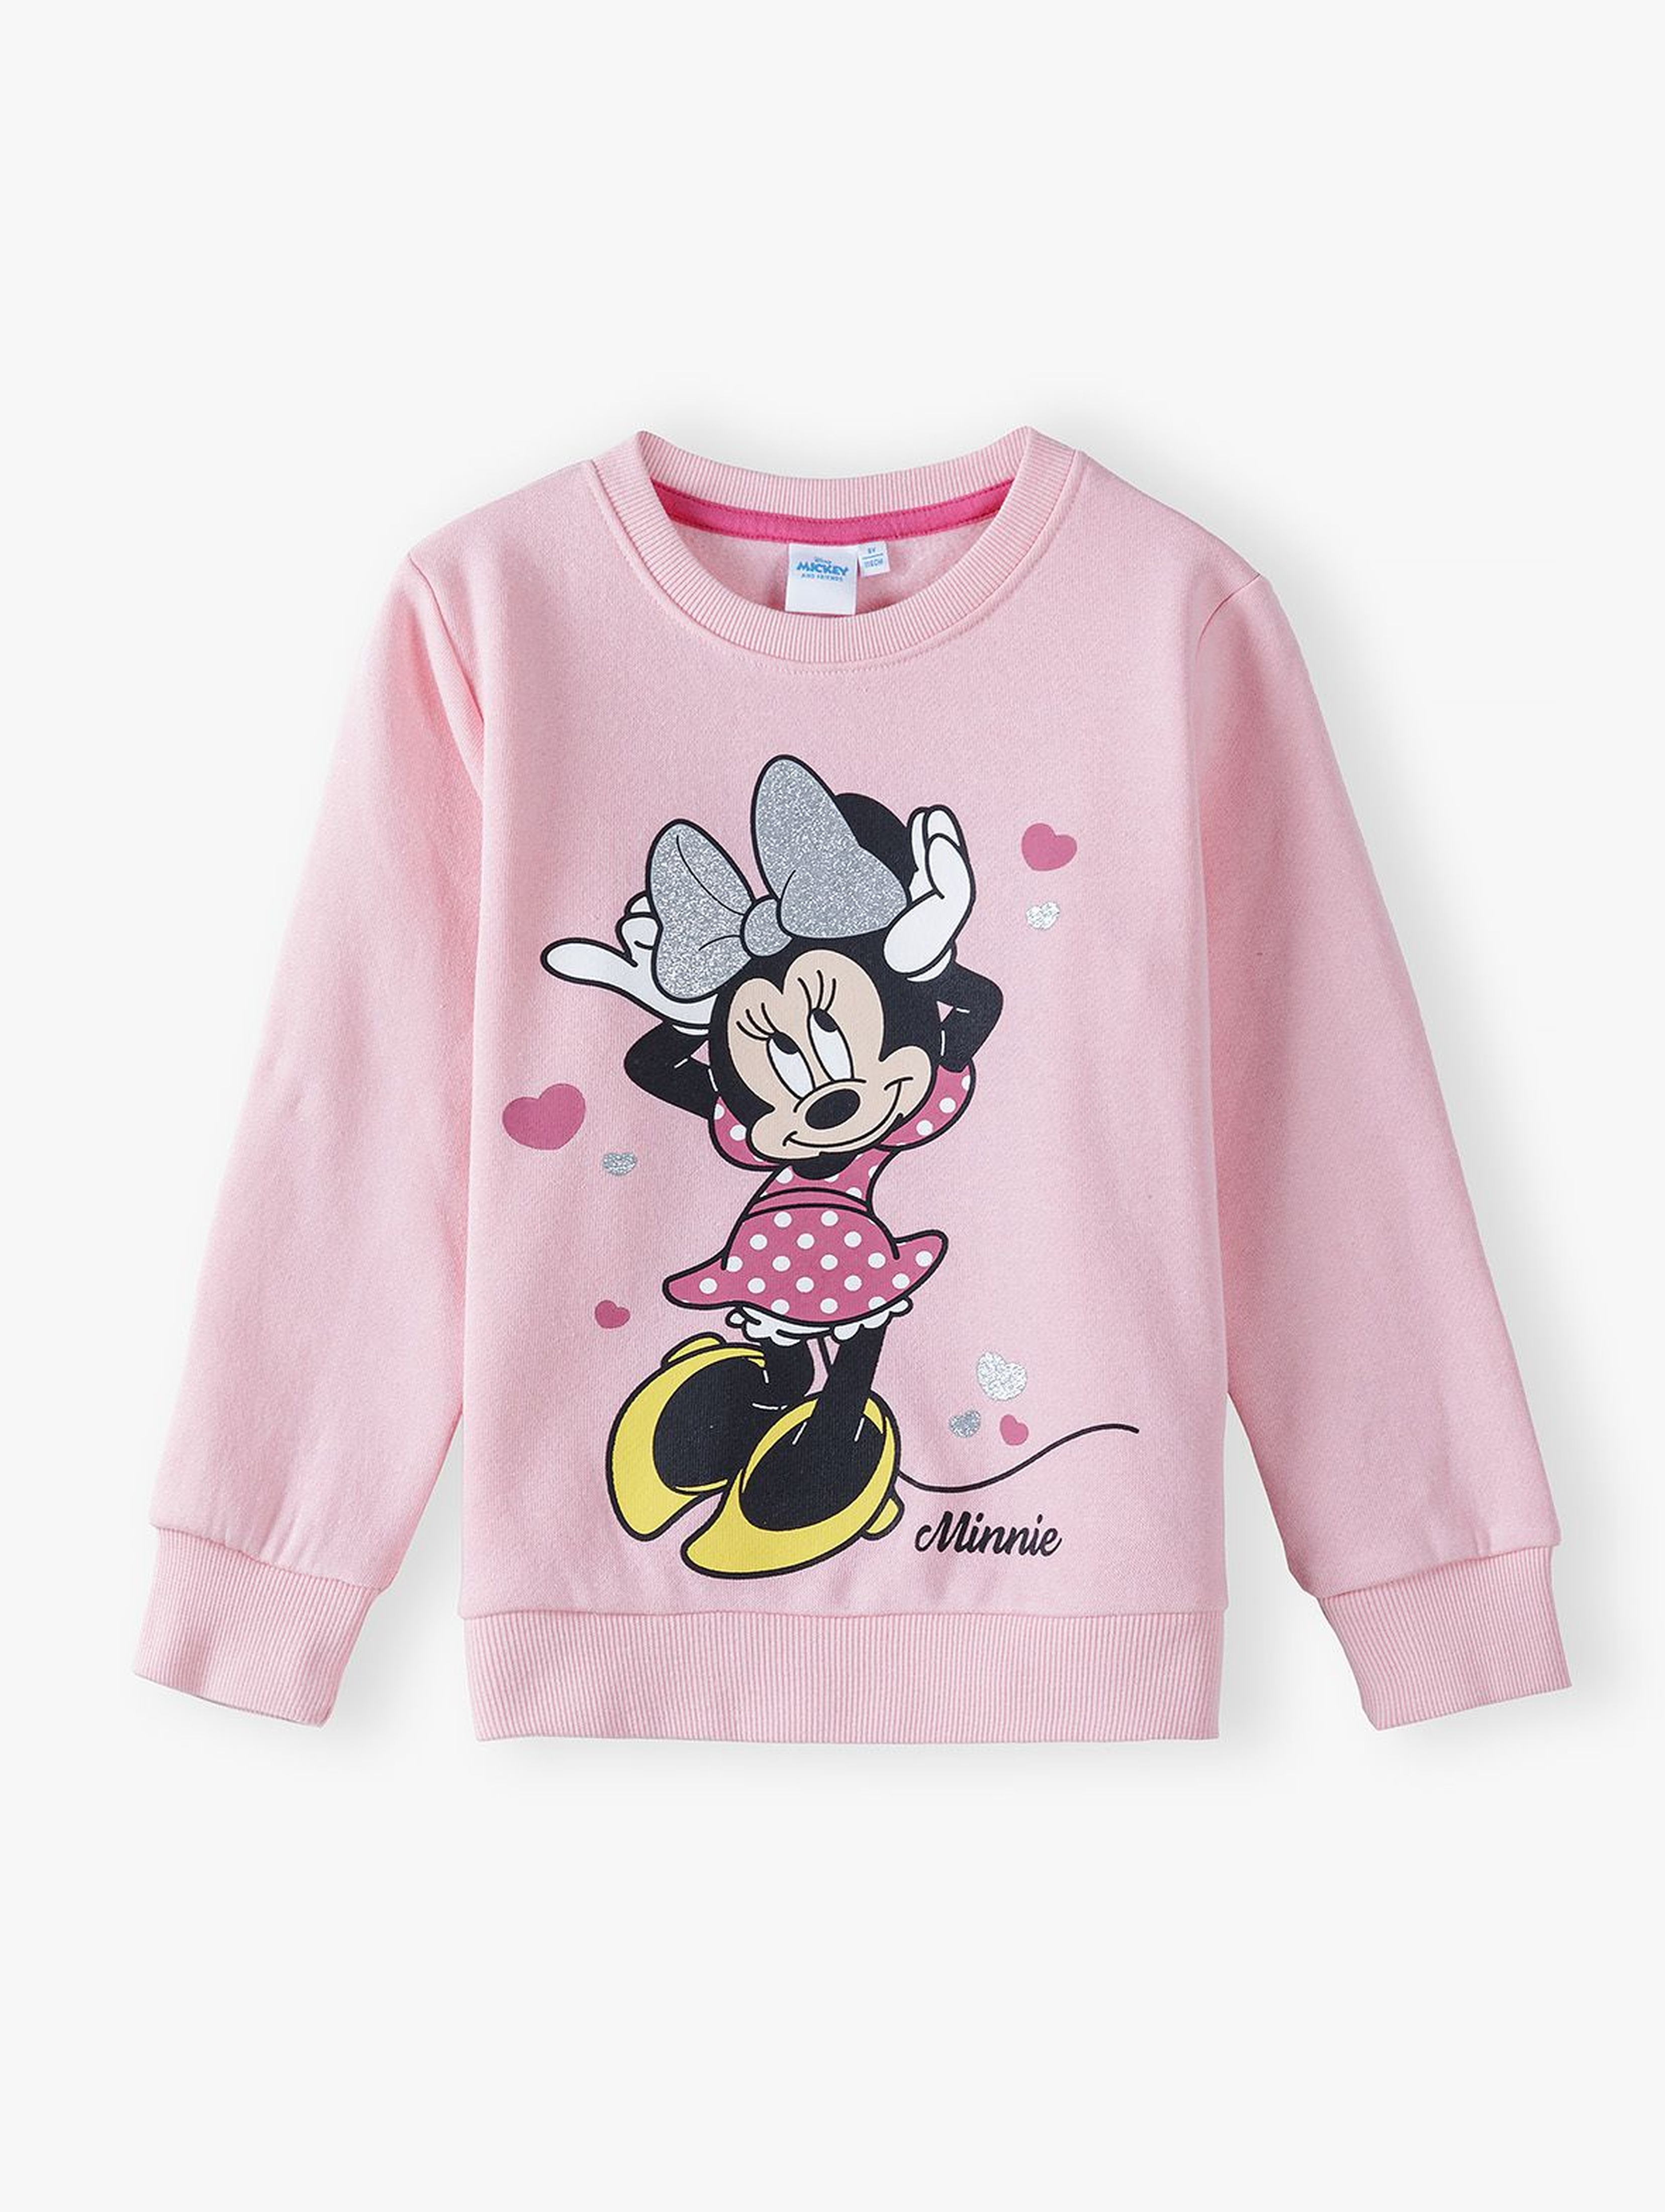 Bluza dresowa dziewczęca różowa Myszka Minnie